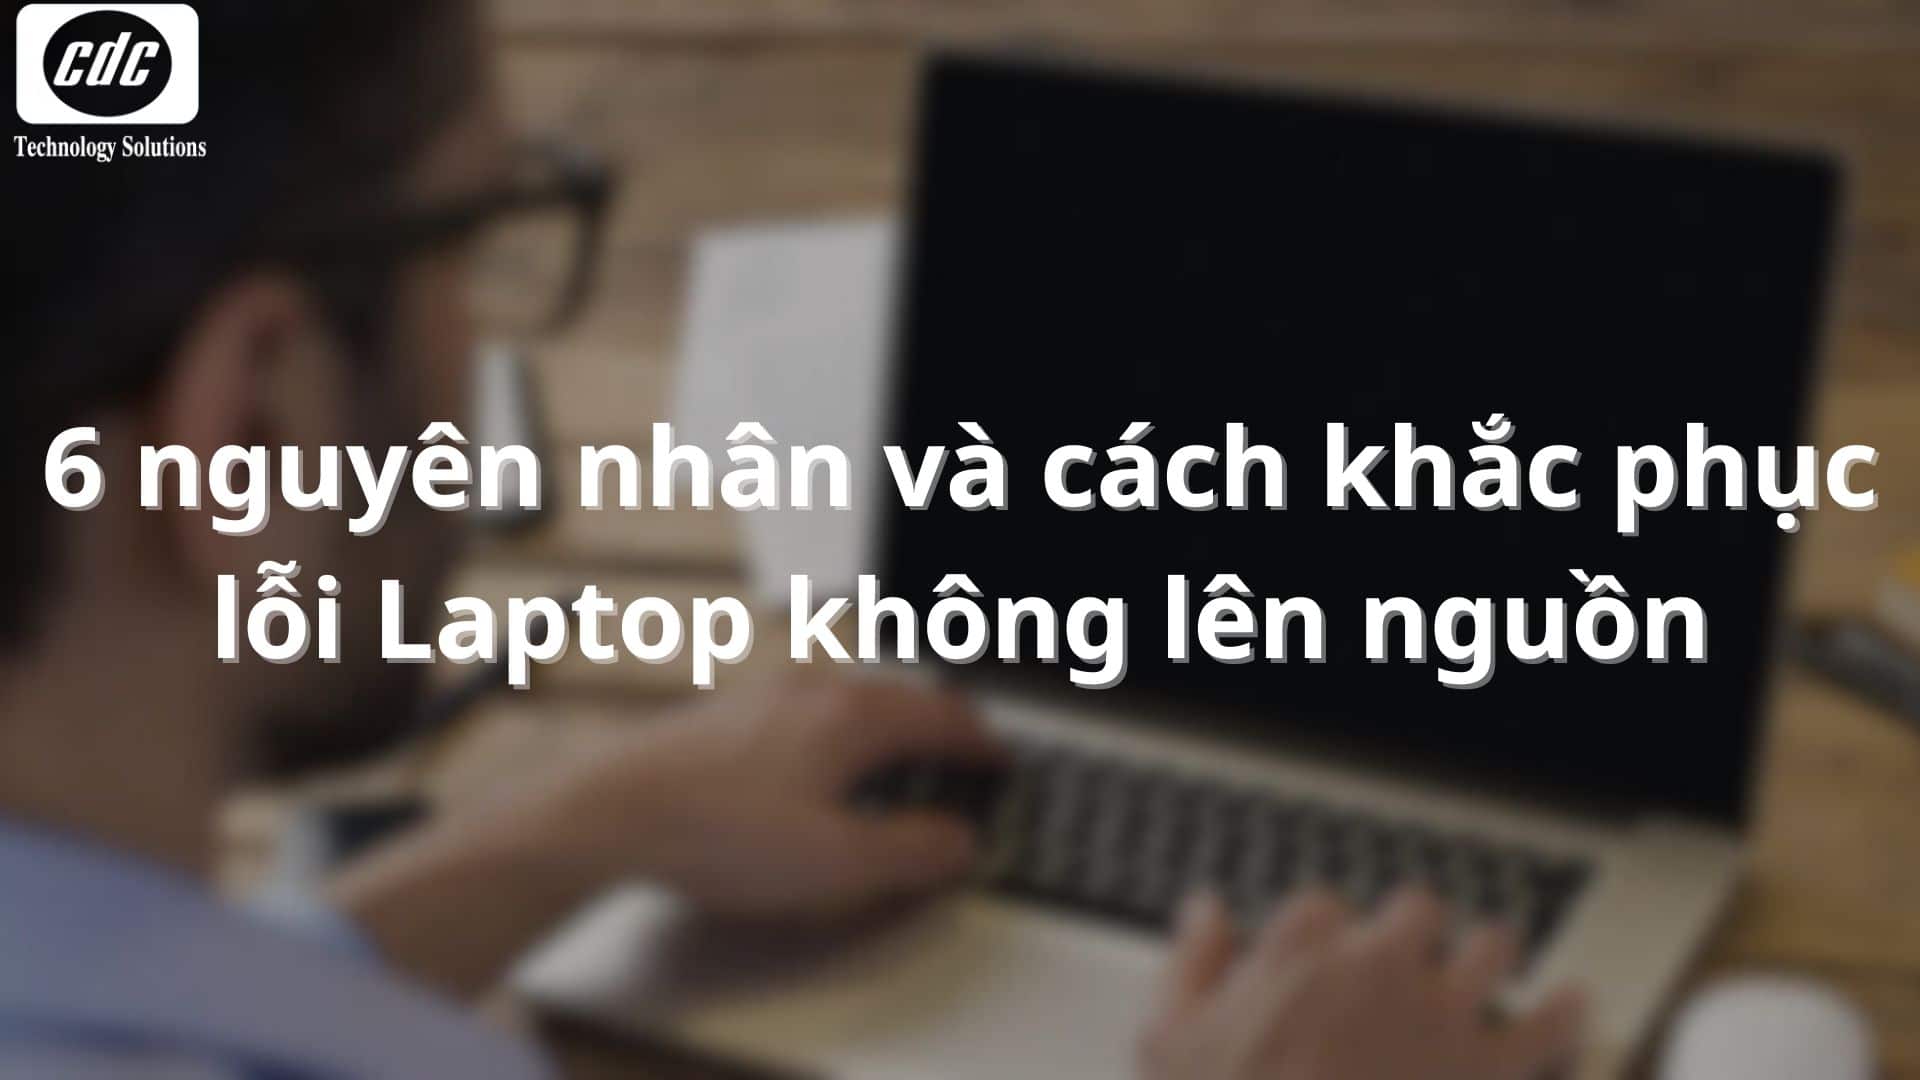 6 nguyên nhân và cách khắc phục lỗi Laptop không lên nguồn